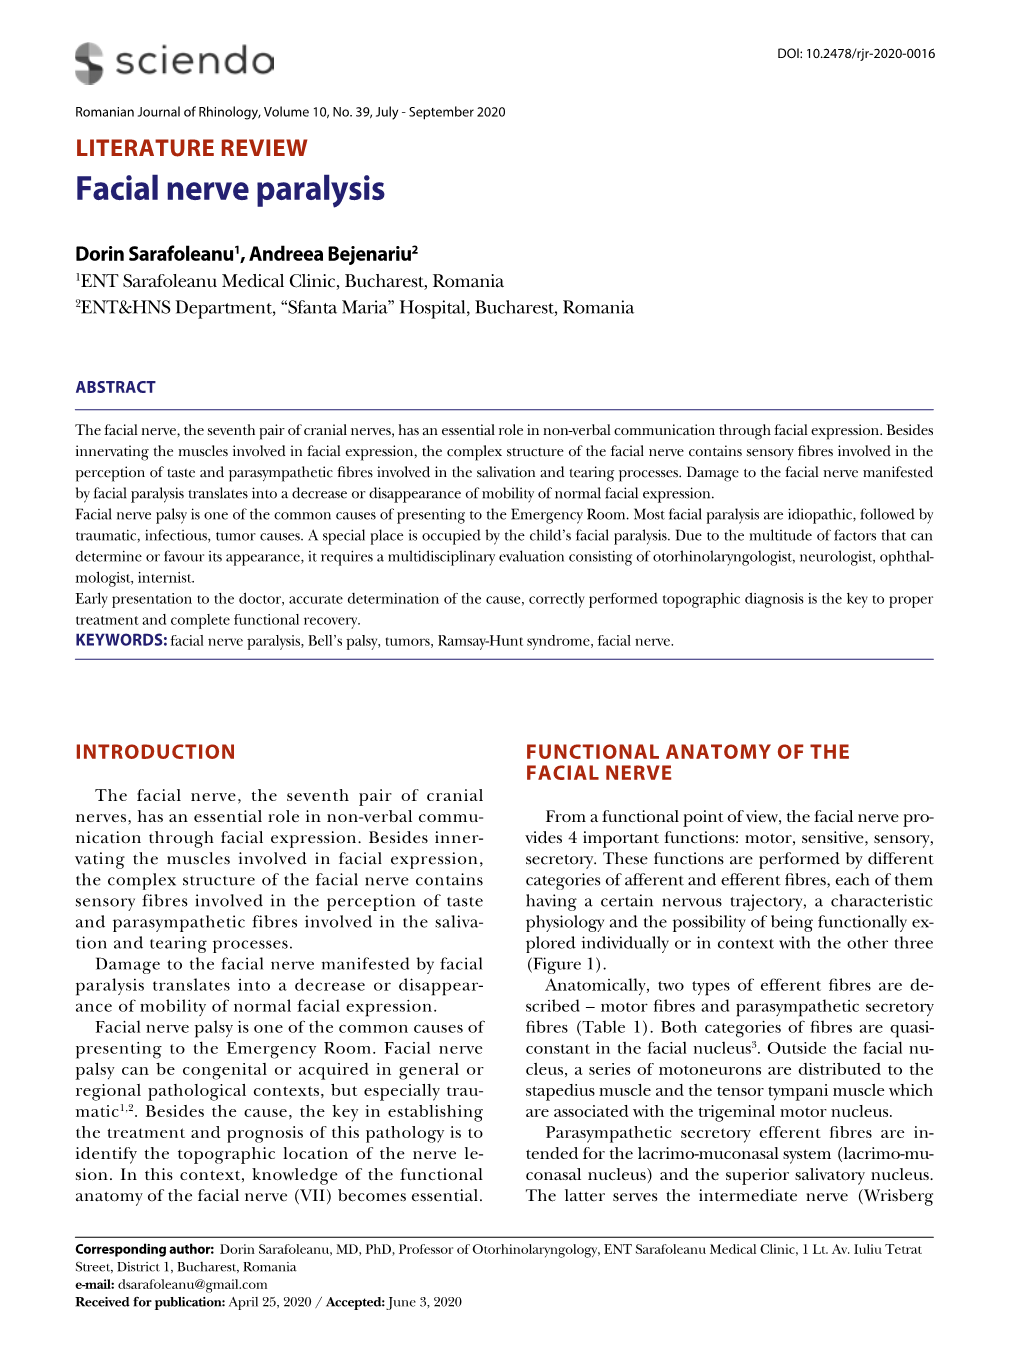 Facial Nerve Paralysis Renală Şi Hepatică: Nu Există Date Privind Experienţa Clinică La Pacienţii Cu InsuCienţă Renală Şi Hepatică